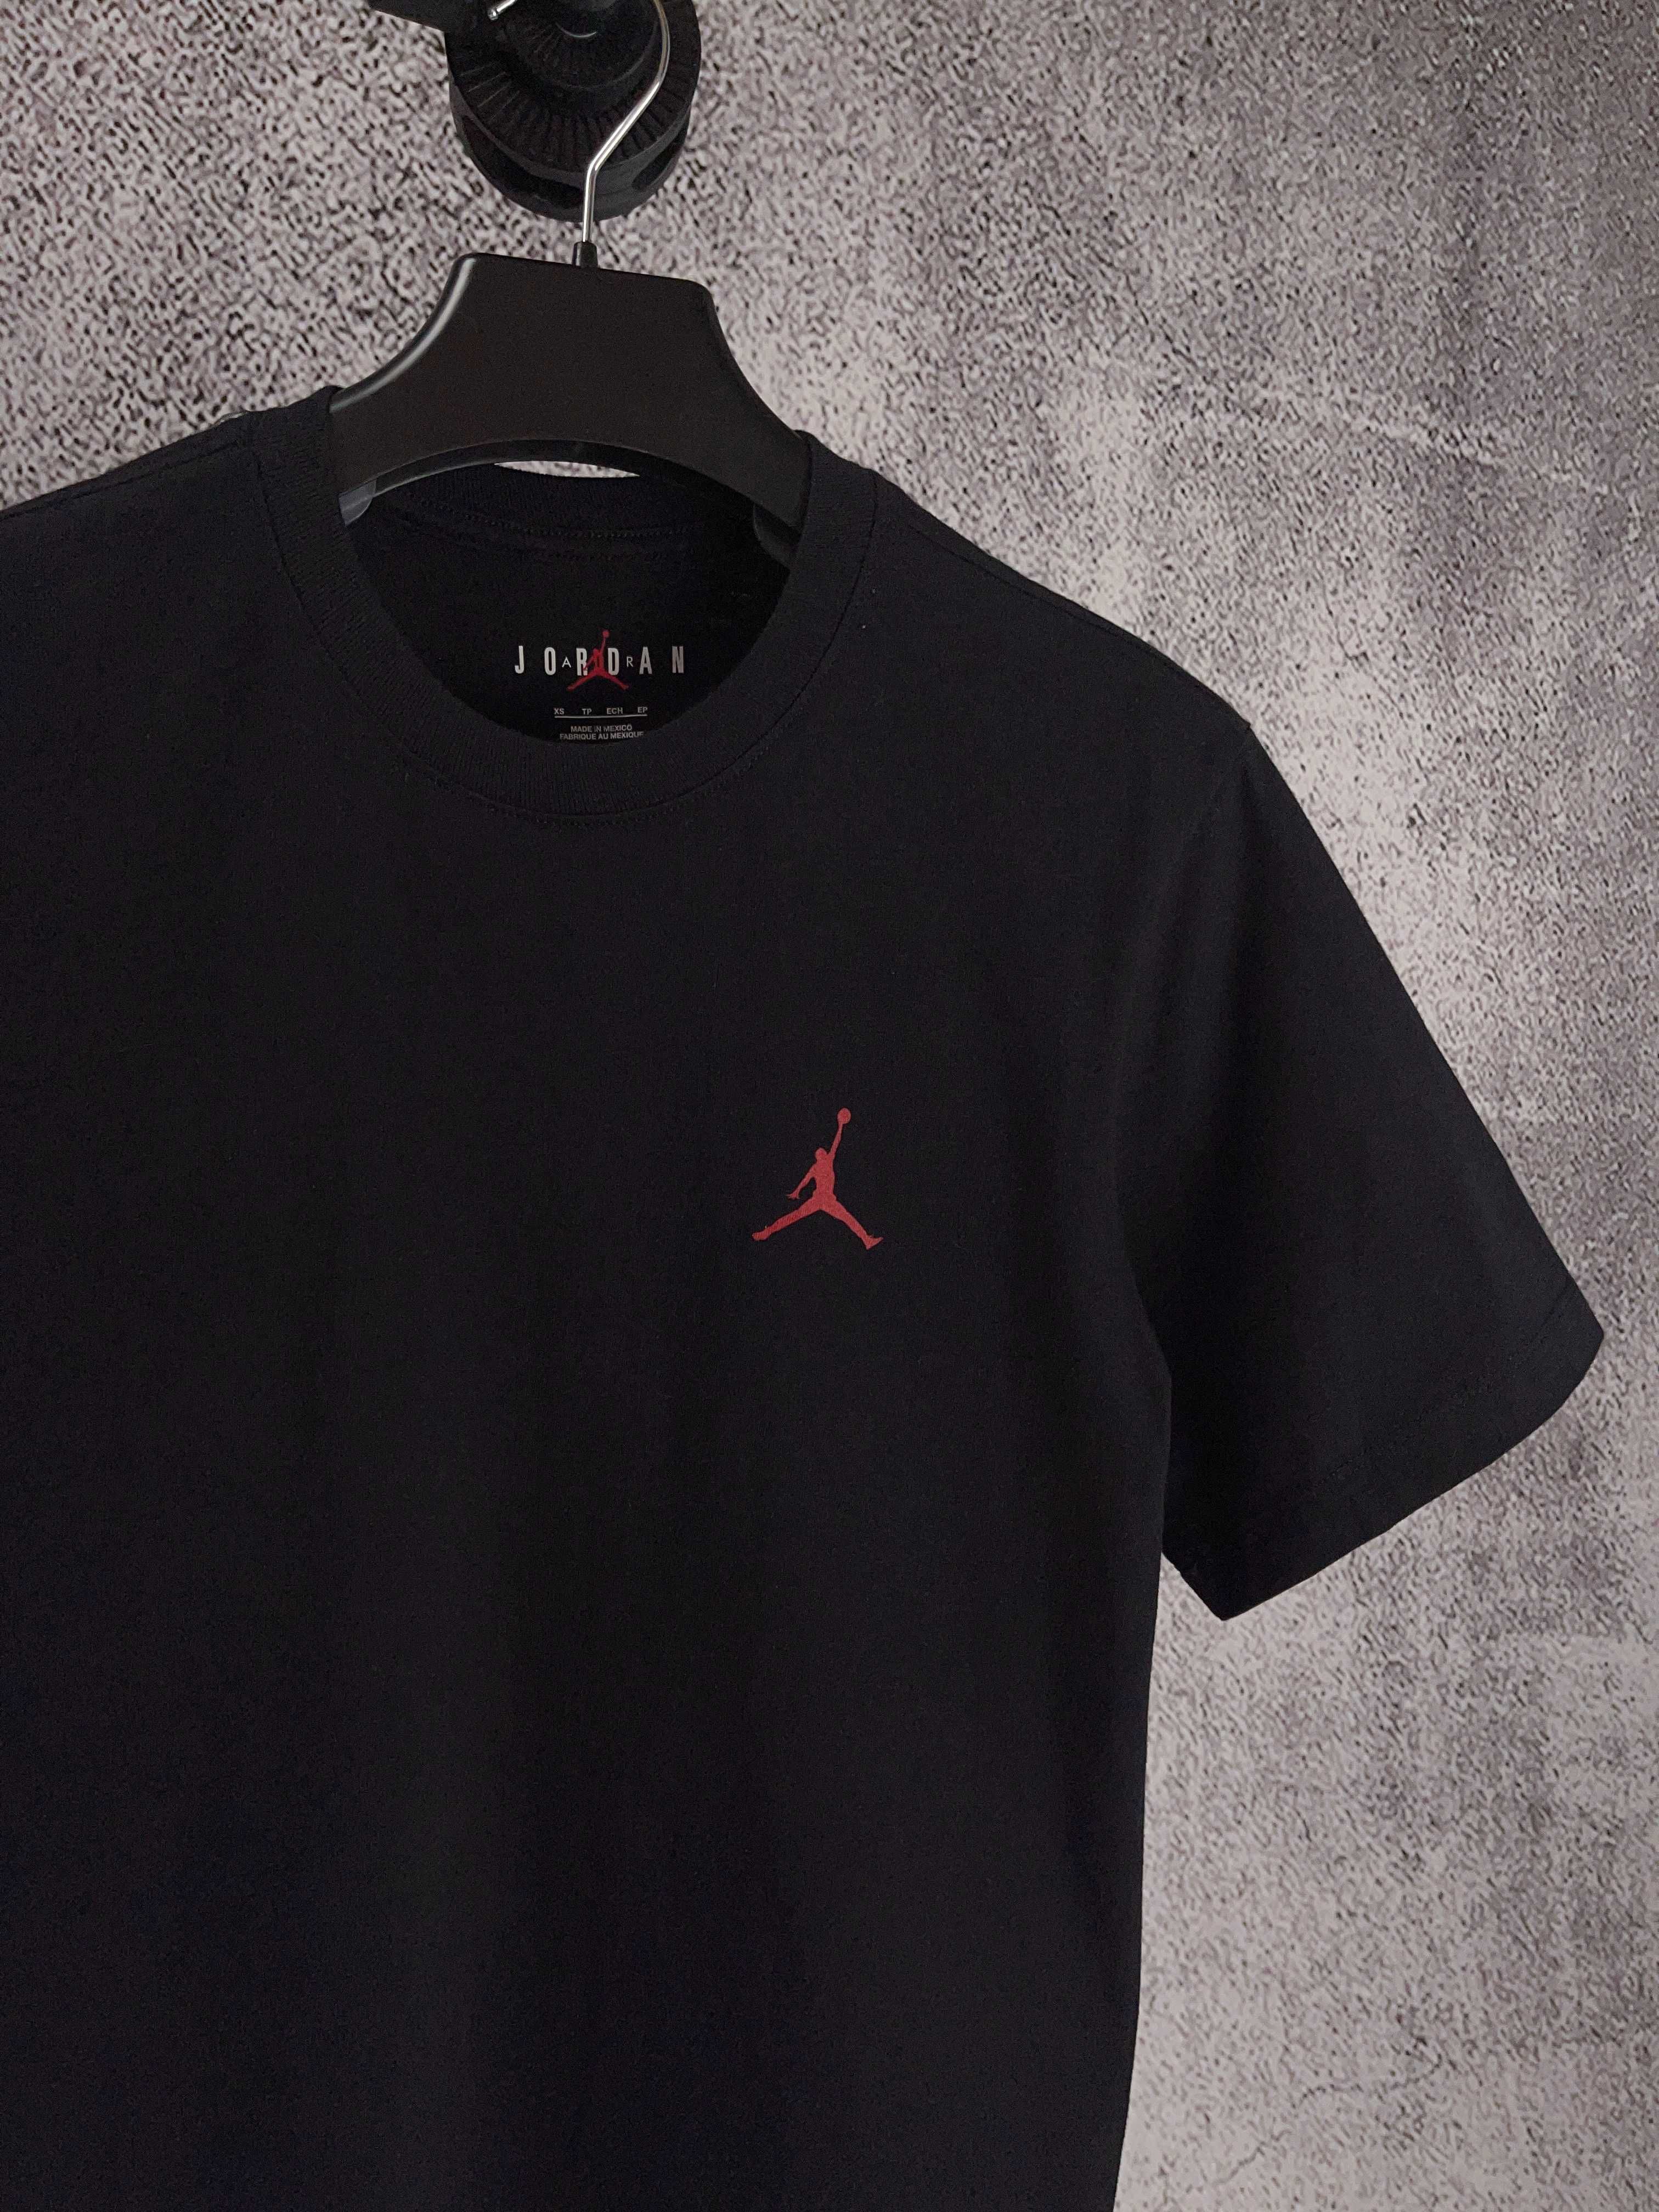 Оригінал футболка Jordan Evolution T-Shirt FB7468-010 нова